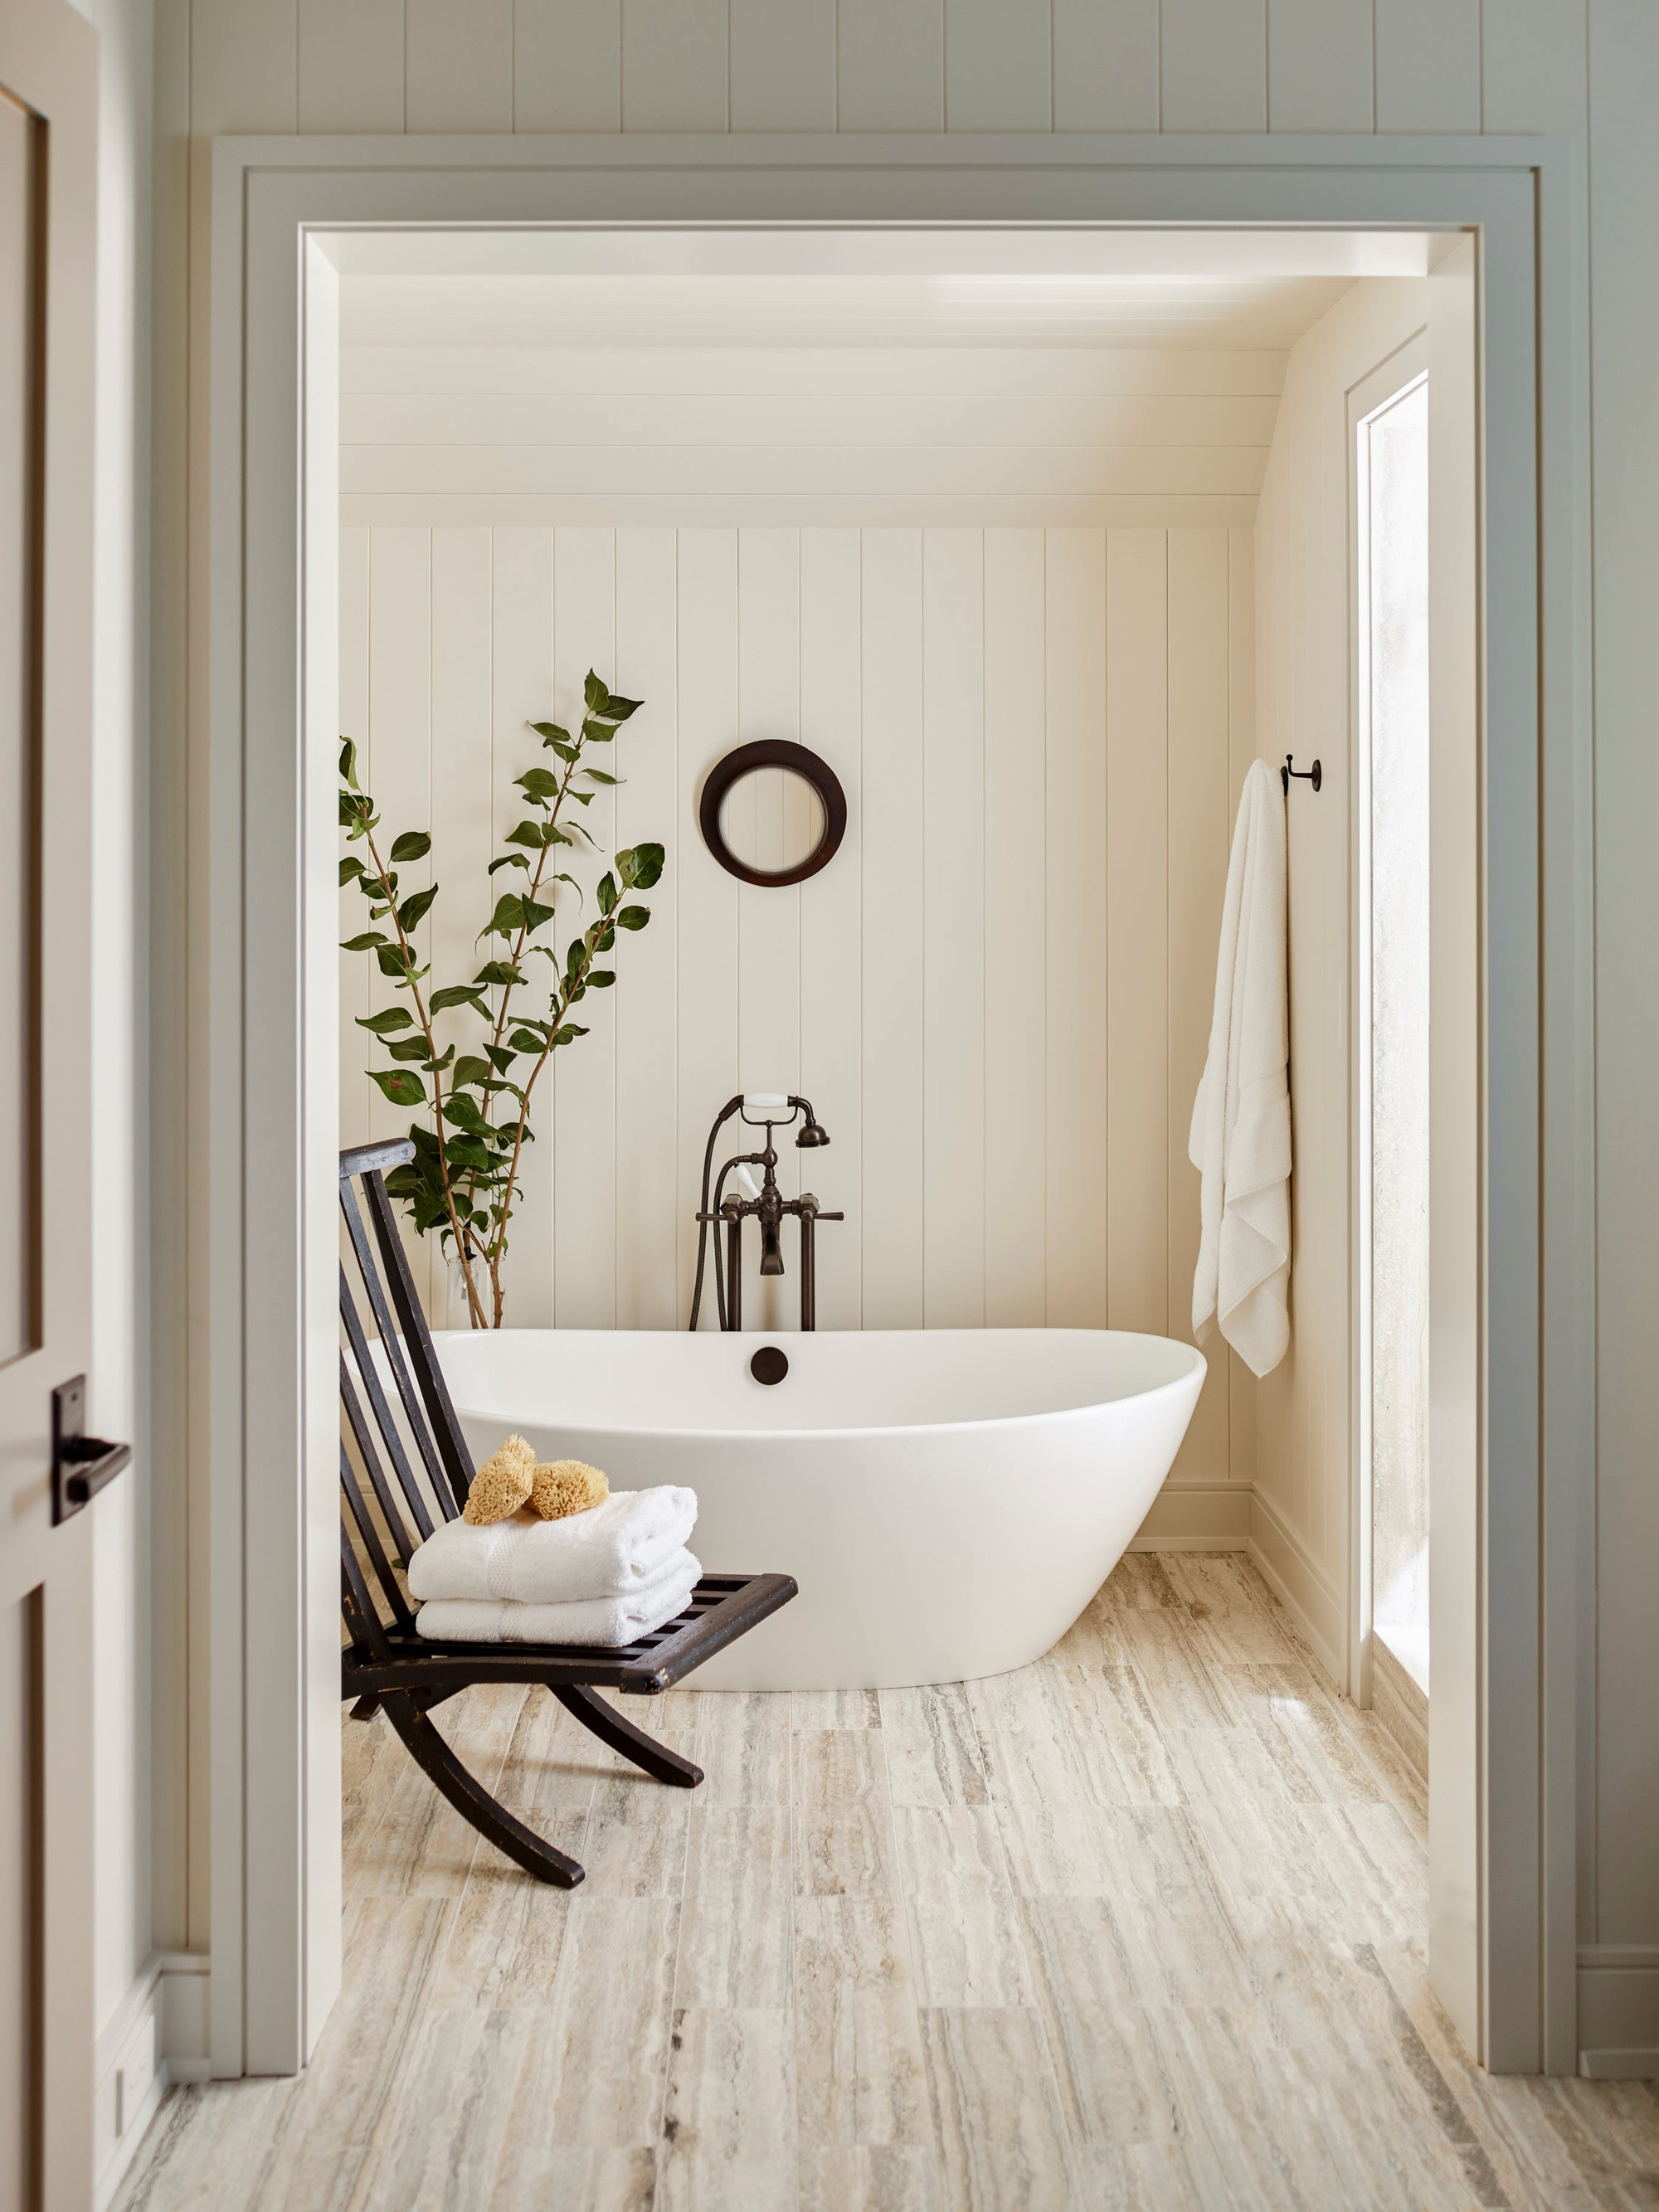  Phòng tắm màu trung tính và ấm áp với sàn được lát gạch lấy cảm hứng từ gỗ và bồn tắm hiện đại với những điểm nhấn màu đen.